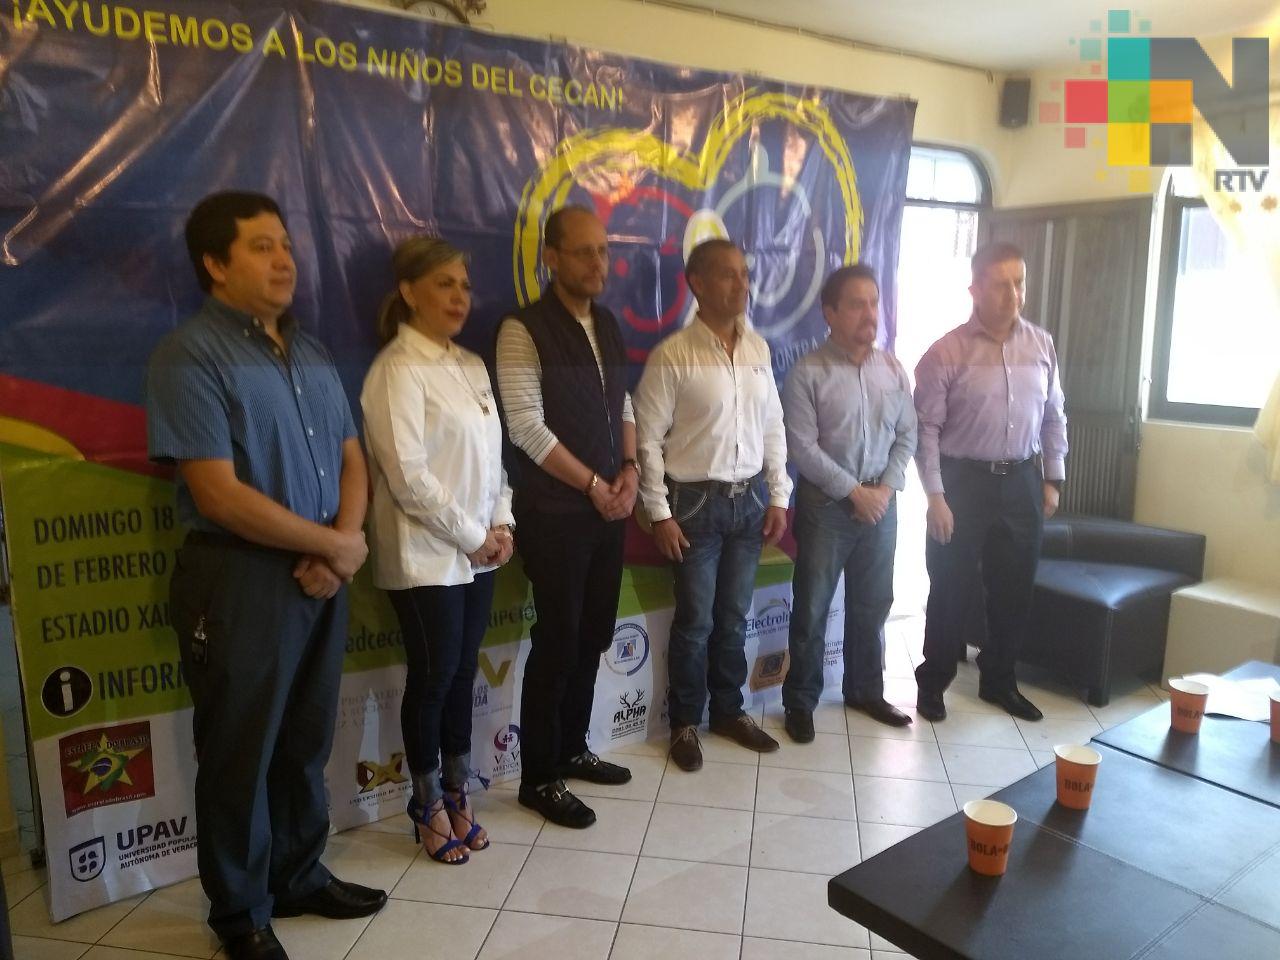 UPAV invita a participar a la carrera 5 km para apoyar al Cecan